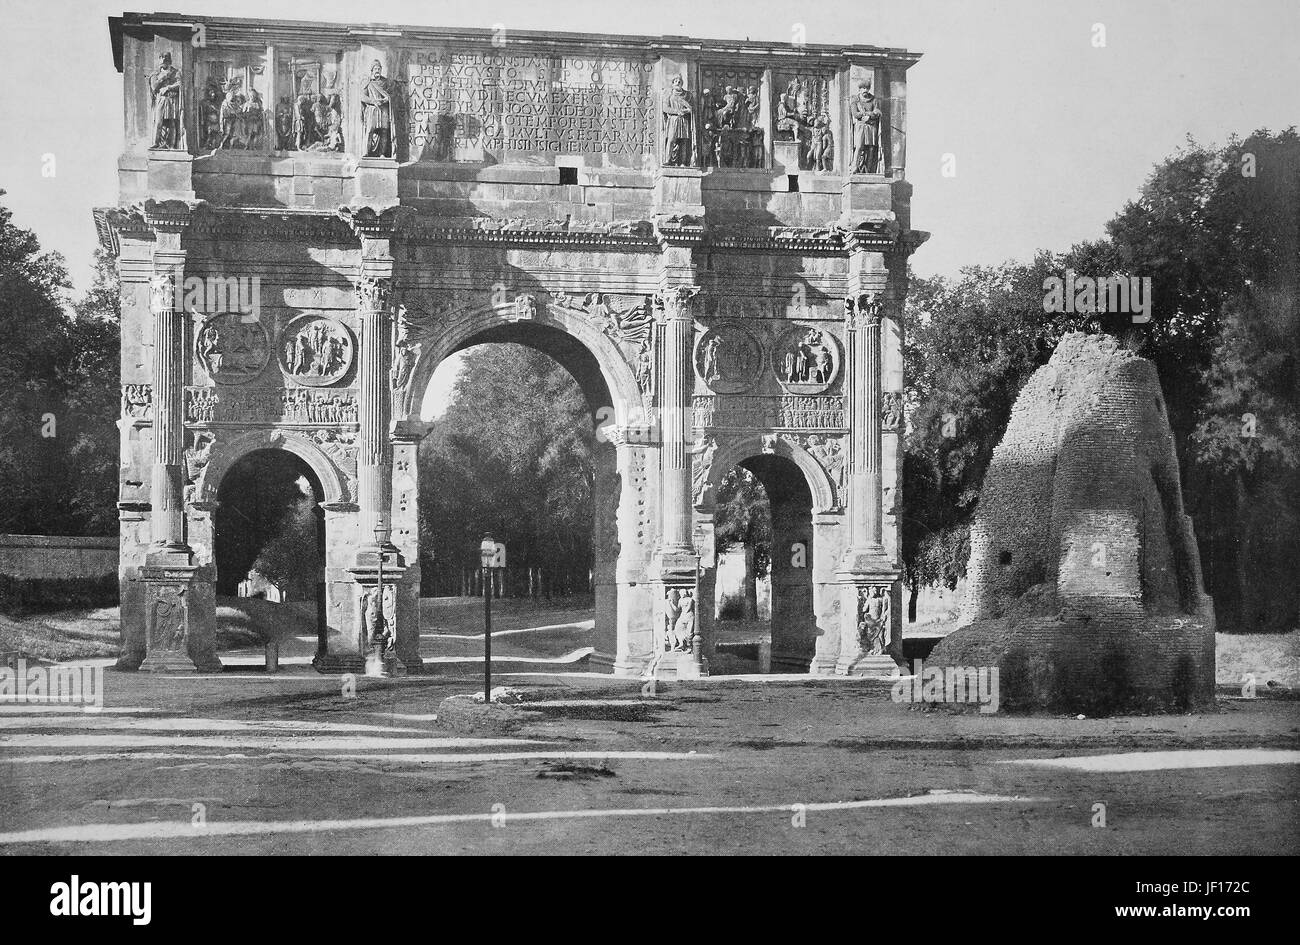 Photo historique de l'Arc de Constantin, Arco di Costantino, un arc de triomphe à Rome, Italie, amélioration numérique reproduction à partir d'un tirage original de 1890 Banque D'Images